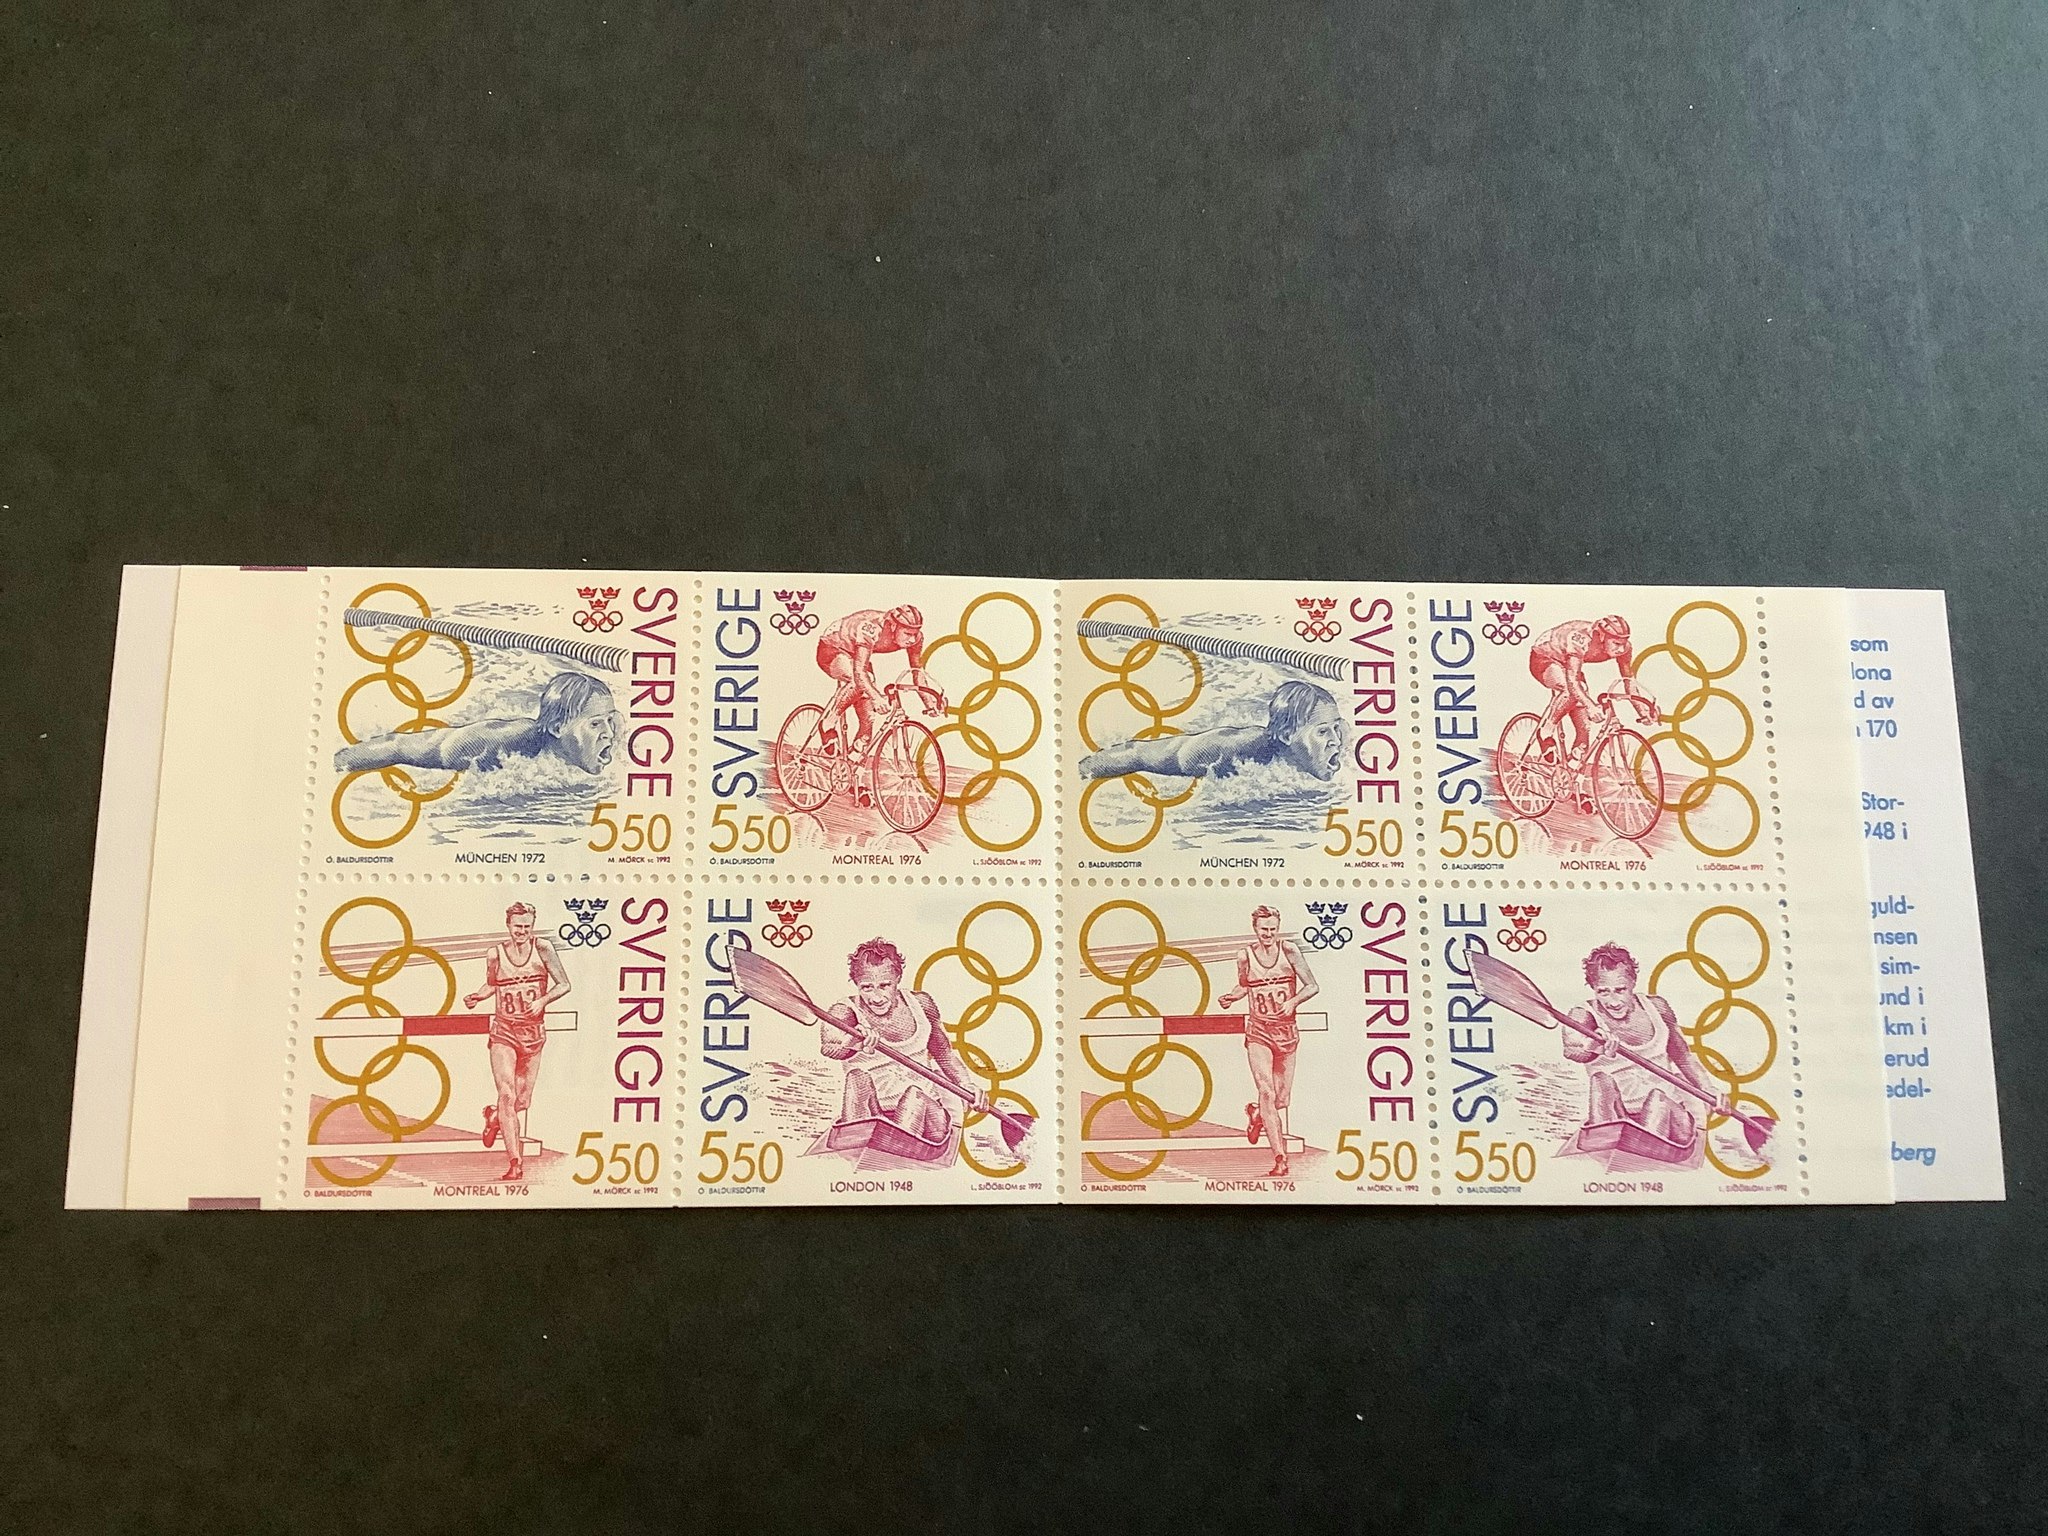 Olympiskt guld III 1992 postfriskt häfte